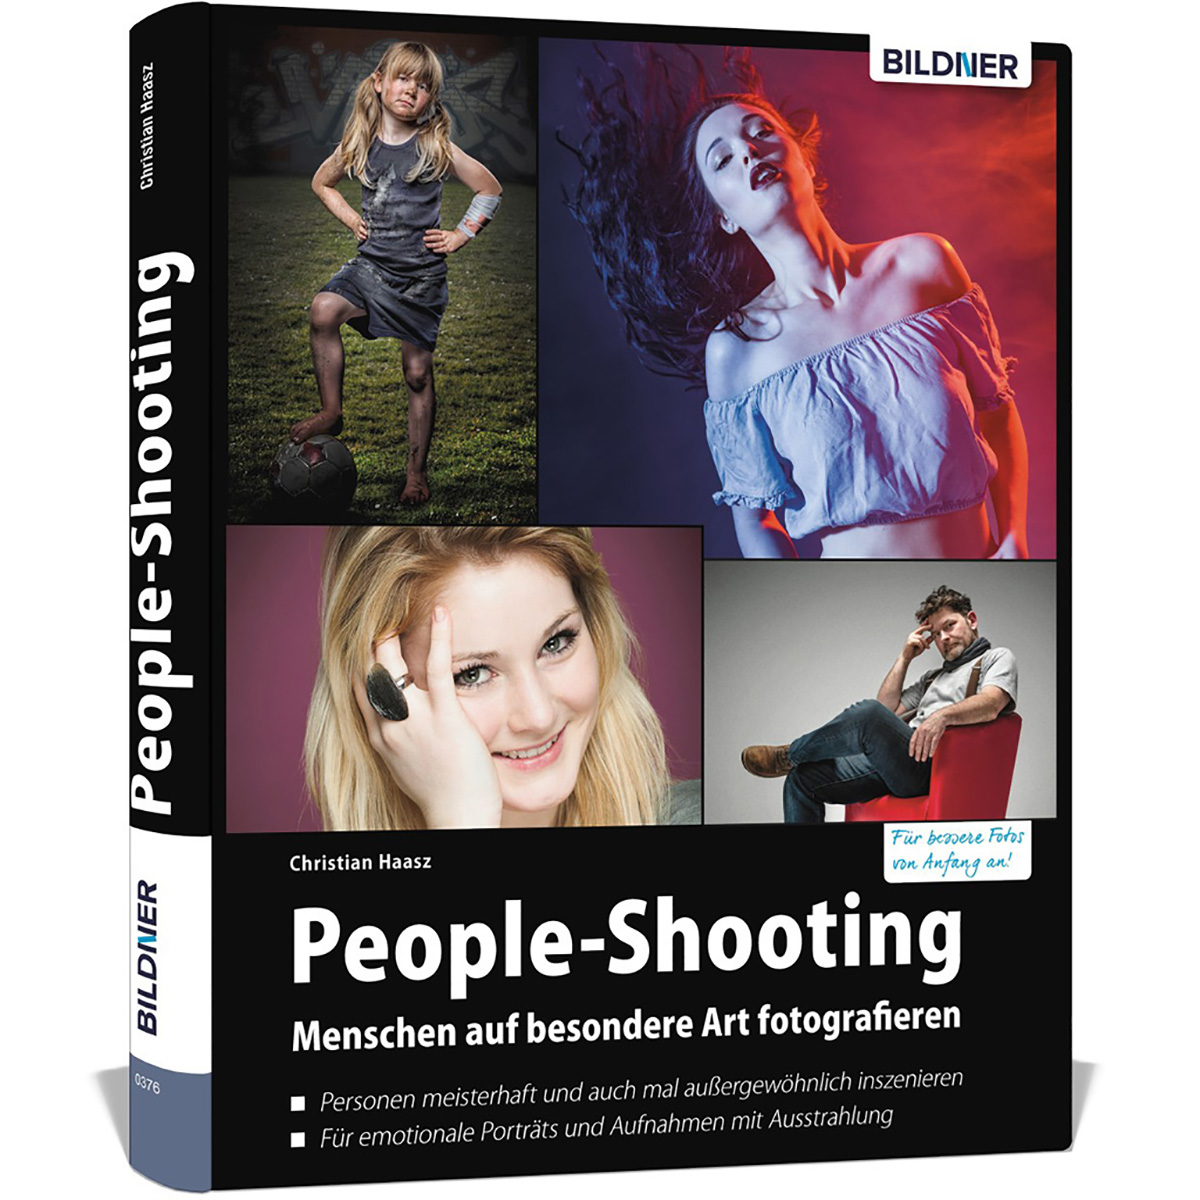 People-Shooting - Menschen auf besondere fotografieren Art